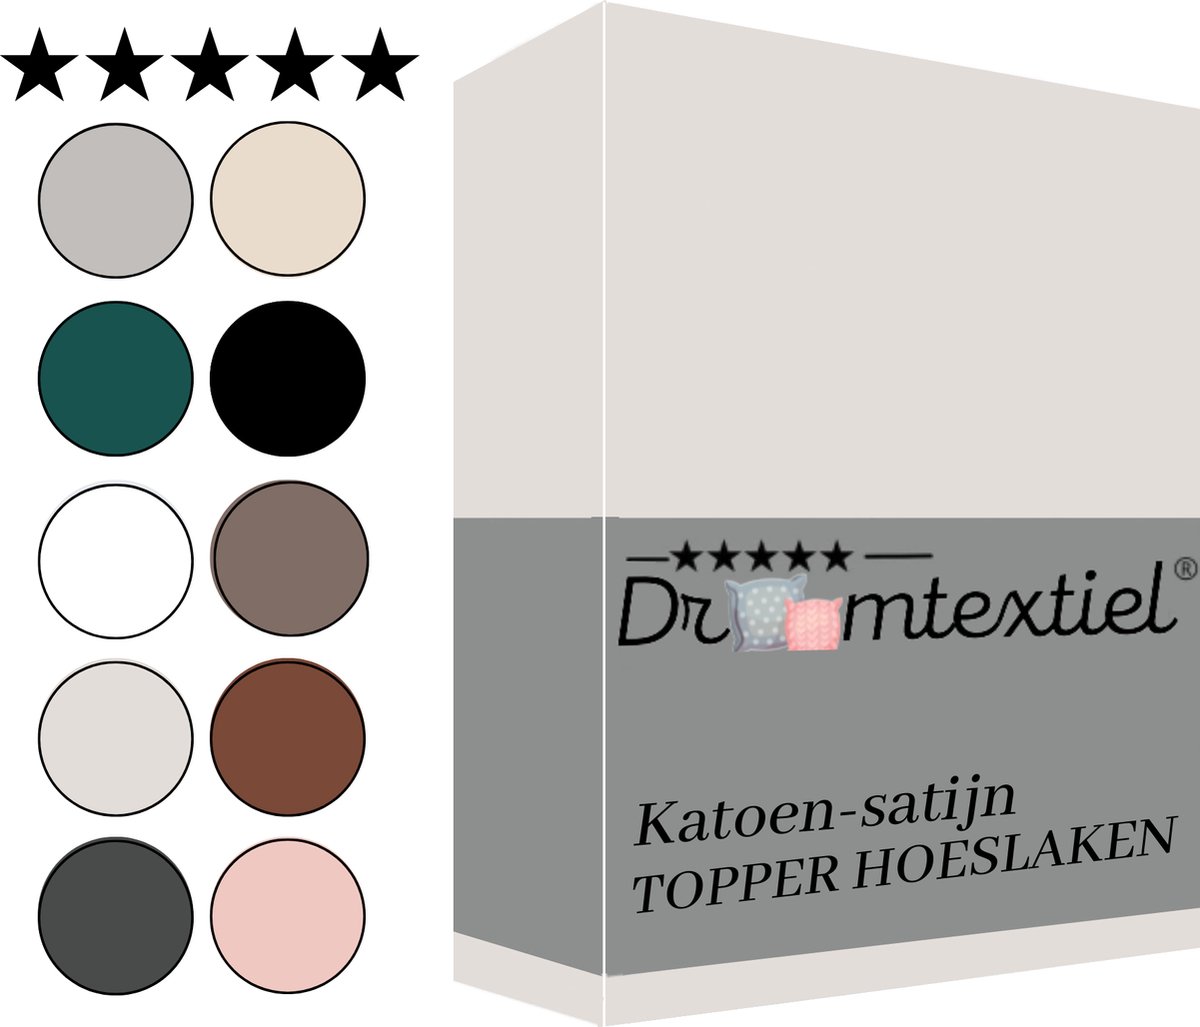 Droomtextiel Katoen-satijn Topper Hoeslaken Eenpersoons - 90x200 cm - Crème - Hoogwaardige Kwaliteit - Super Zacht